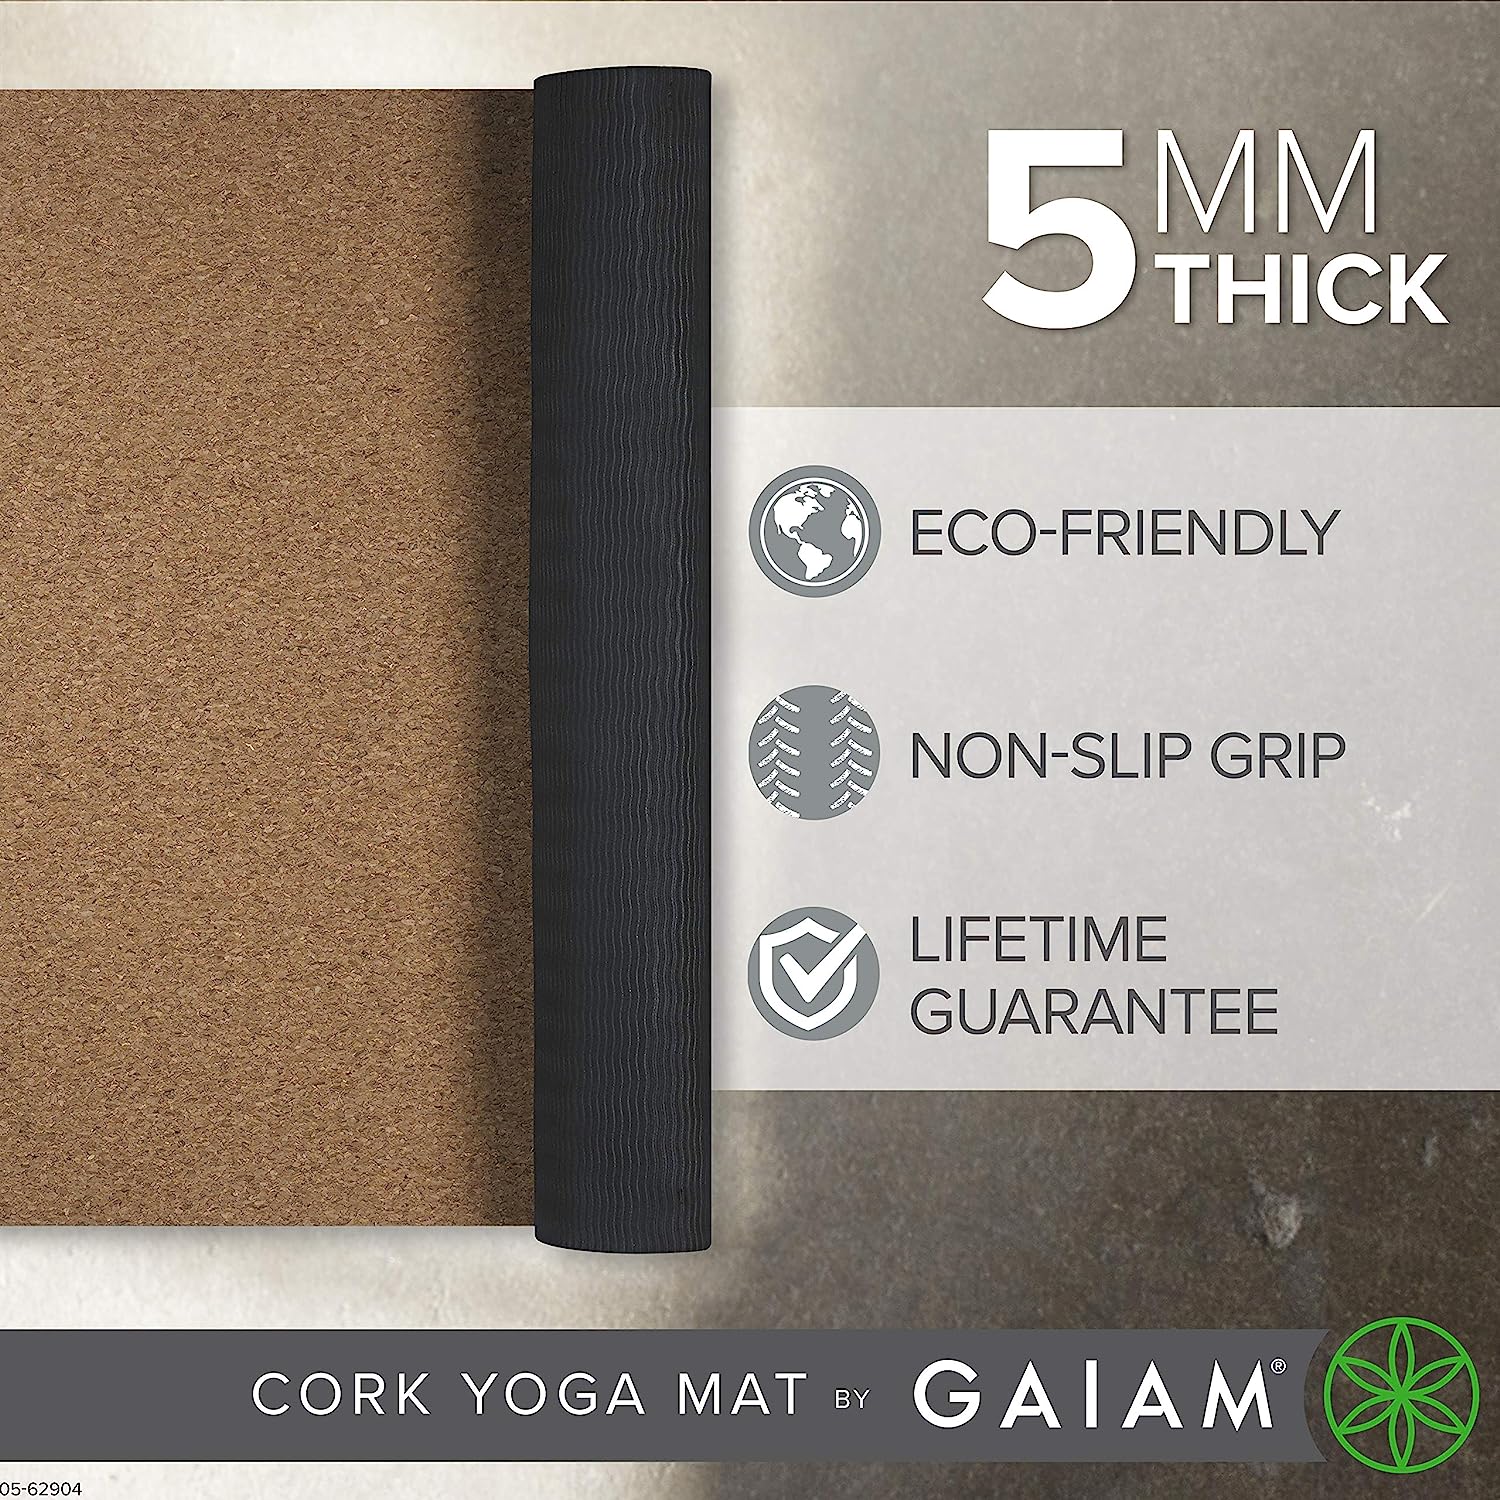 ヨガマット フィットネス 【送料無料】Gaiam Yoga Mat Cork with Non-Toxic Rubber Backing, Natural Sustainable Cork Resists Germs and Odor - Great for Hot Yoga, Pilates (68-Inch x 24-Inch x 5mm Thick)ヨガマット フィットネス